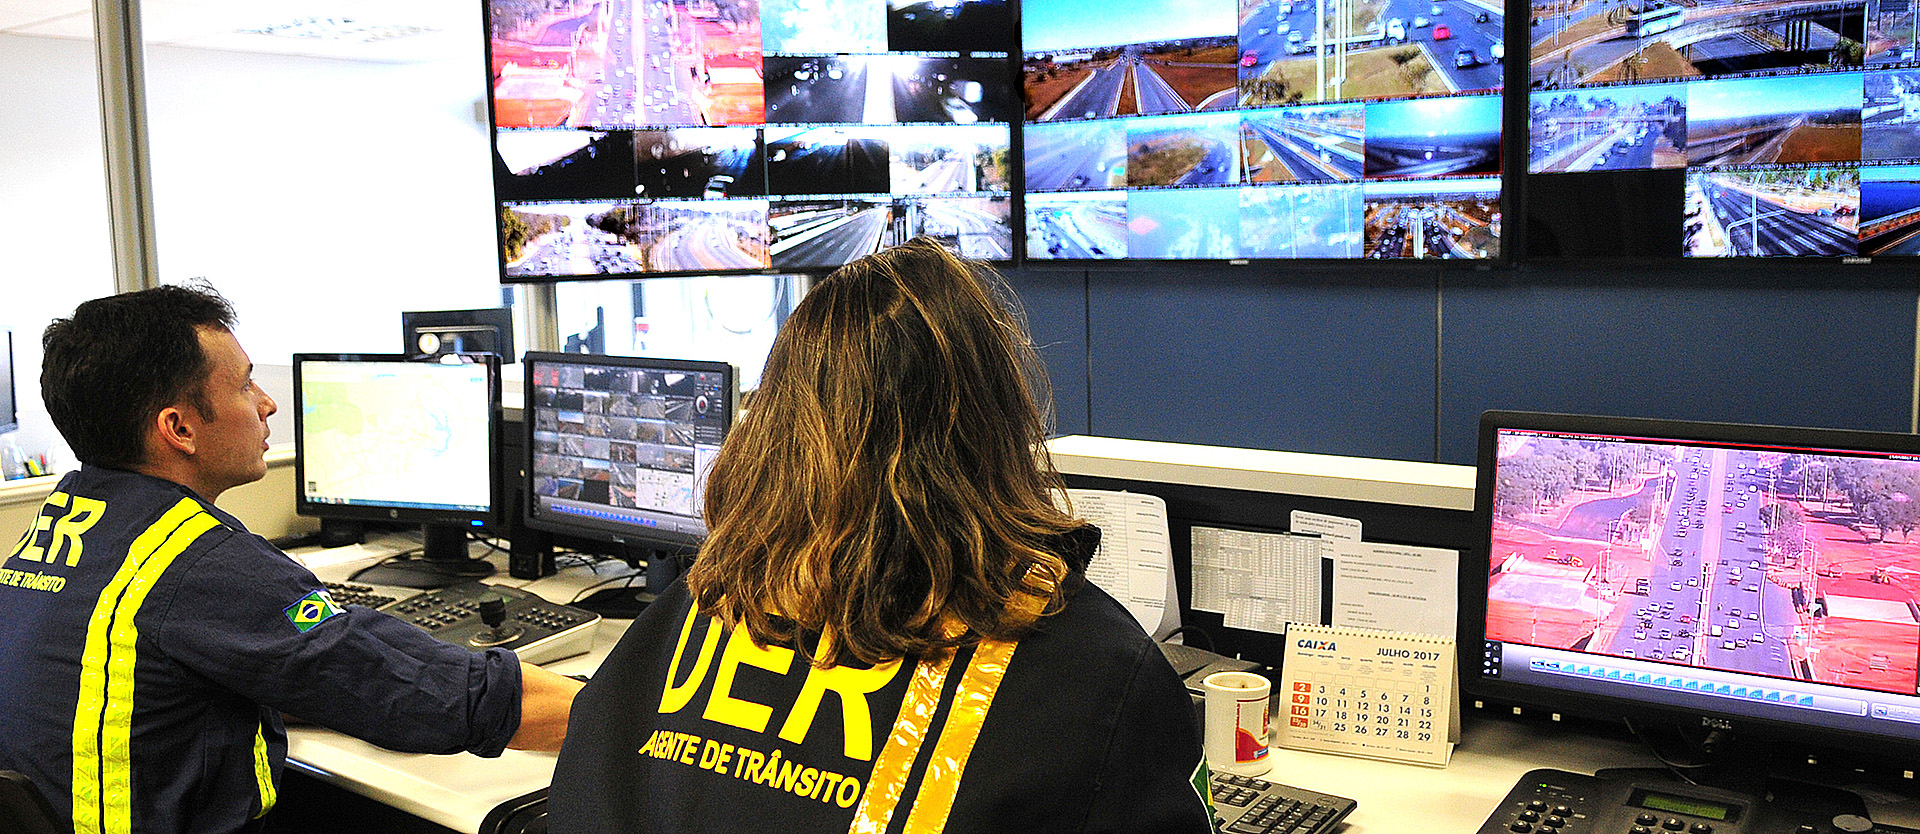 Monitoramento das câmeras ocorre na sede do DER-DF.